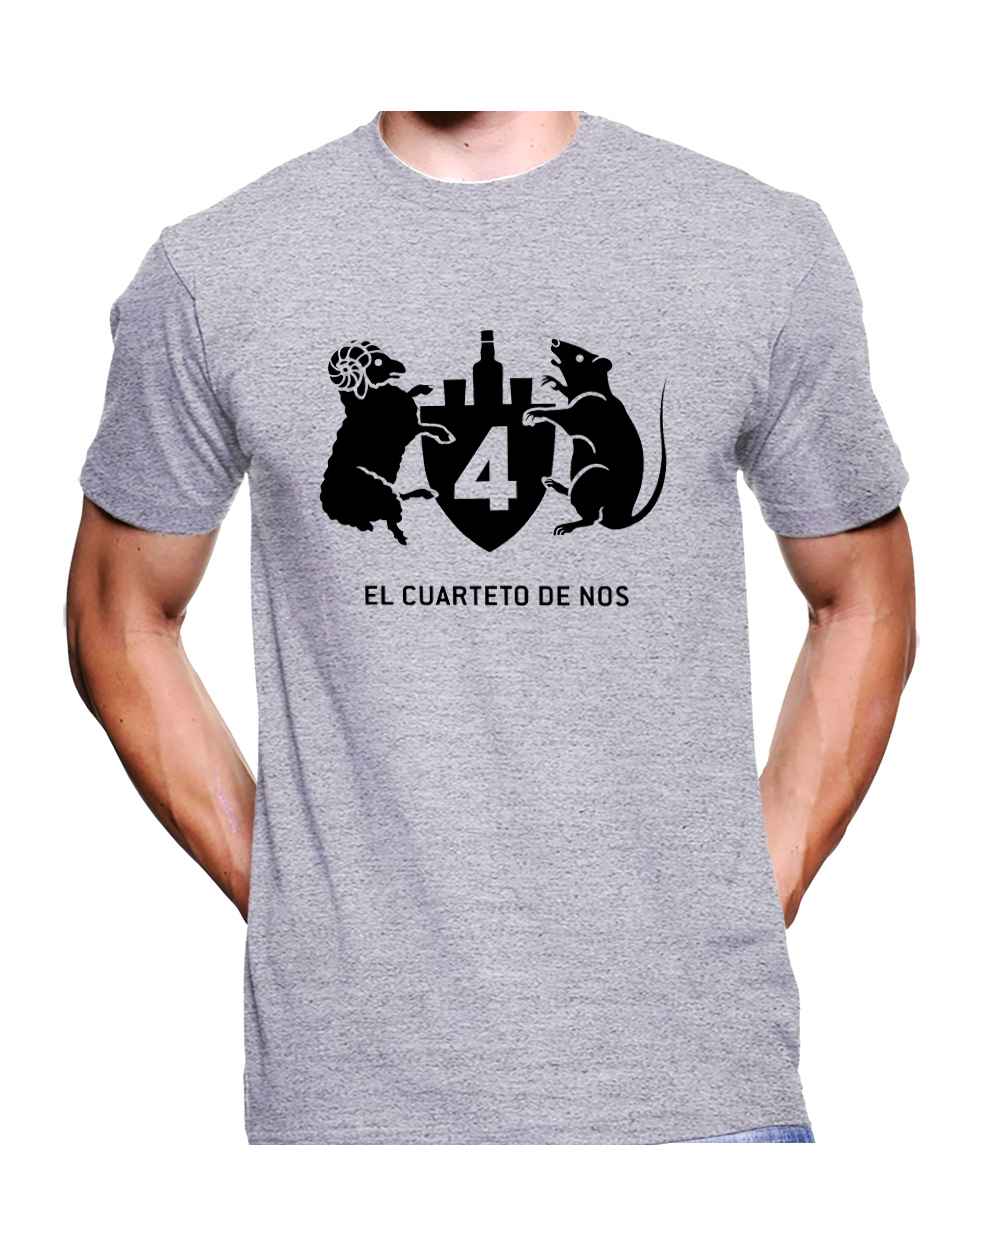 Camiseta Estampada Hombre El cuarteto de NOS